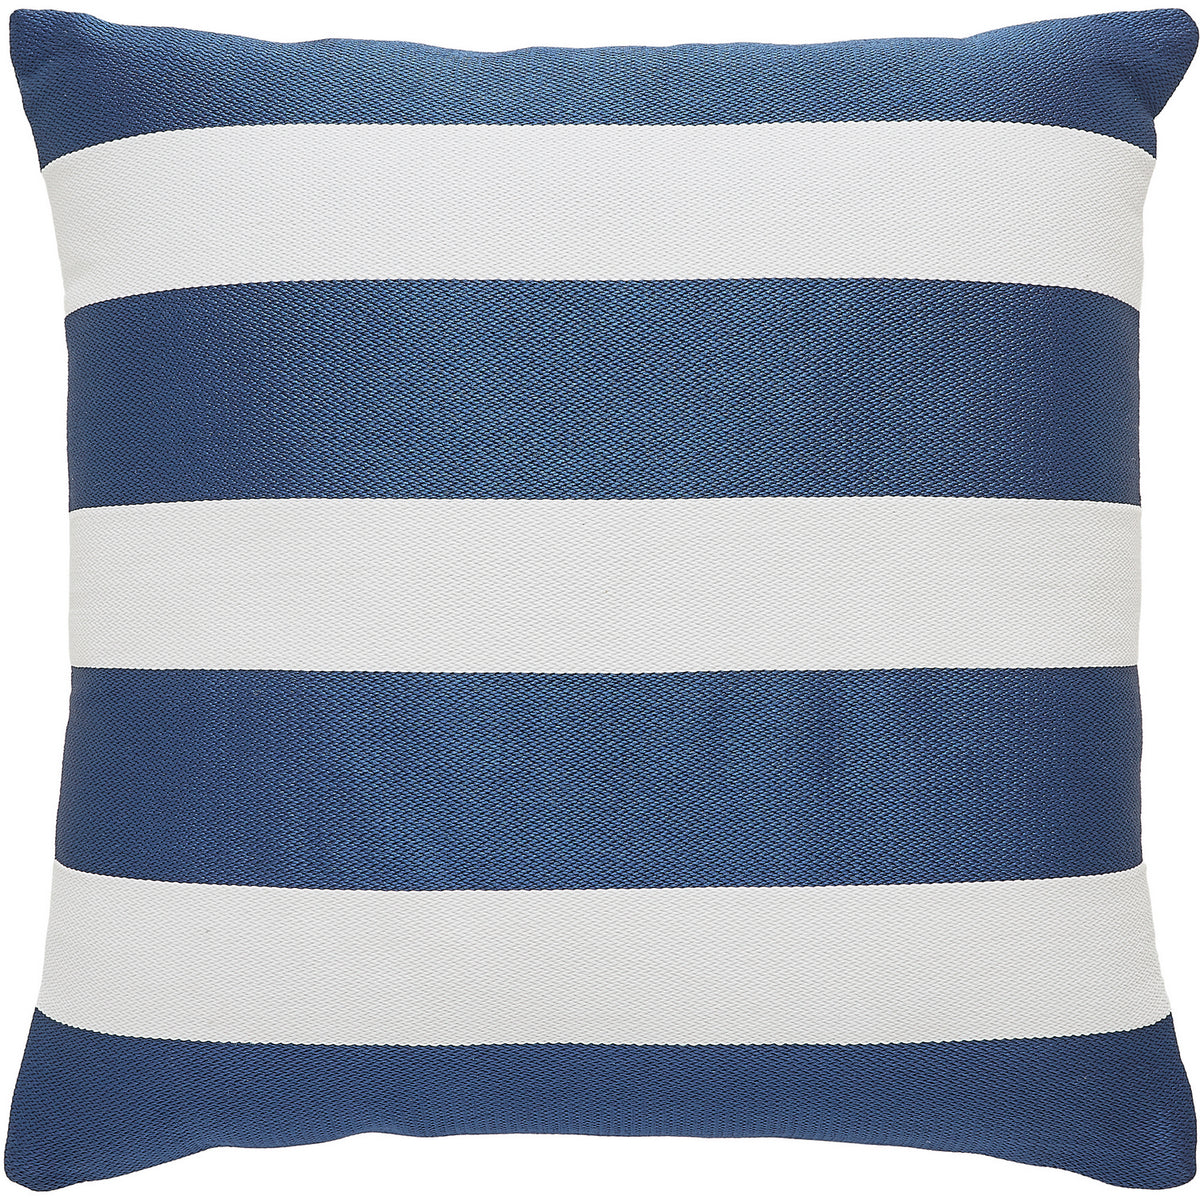 Renwil - PWFLX1031 - Pillow - Toluca - Blue/ White Stripes